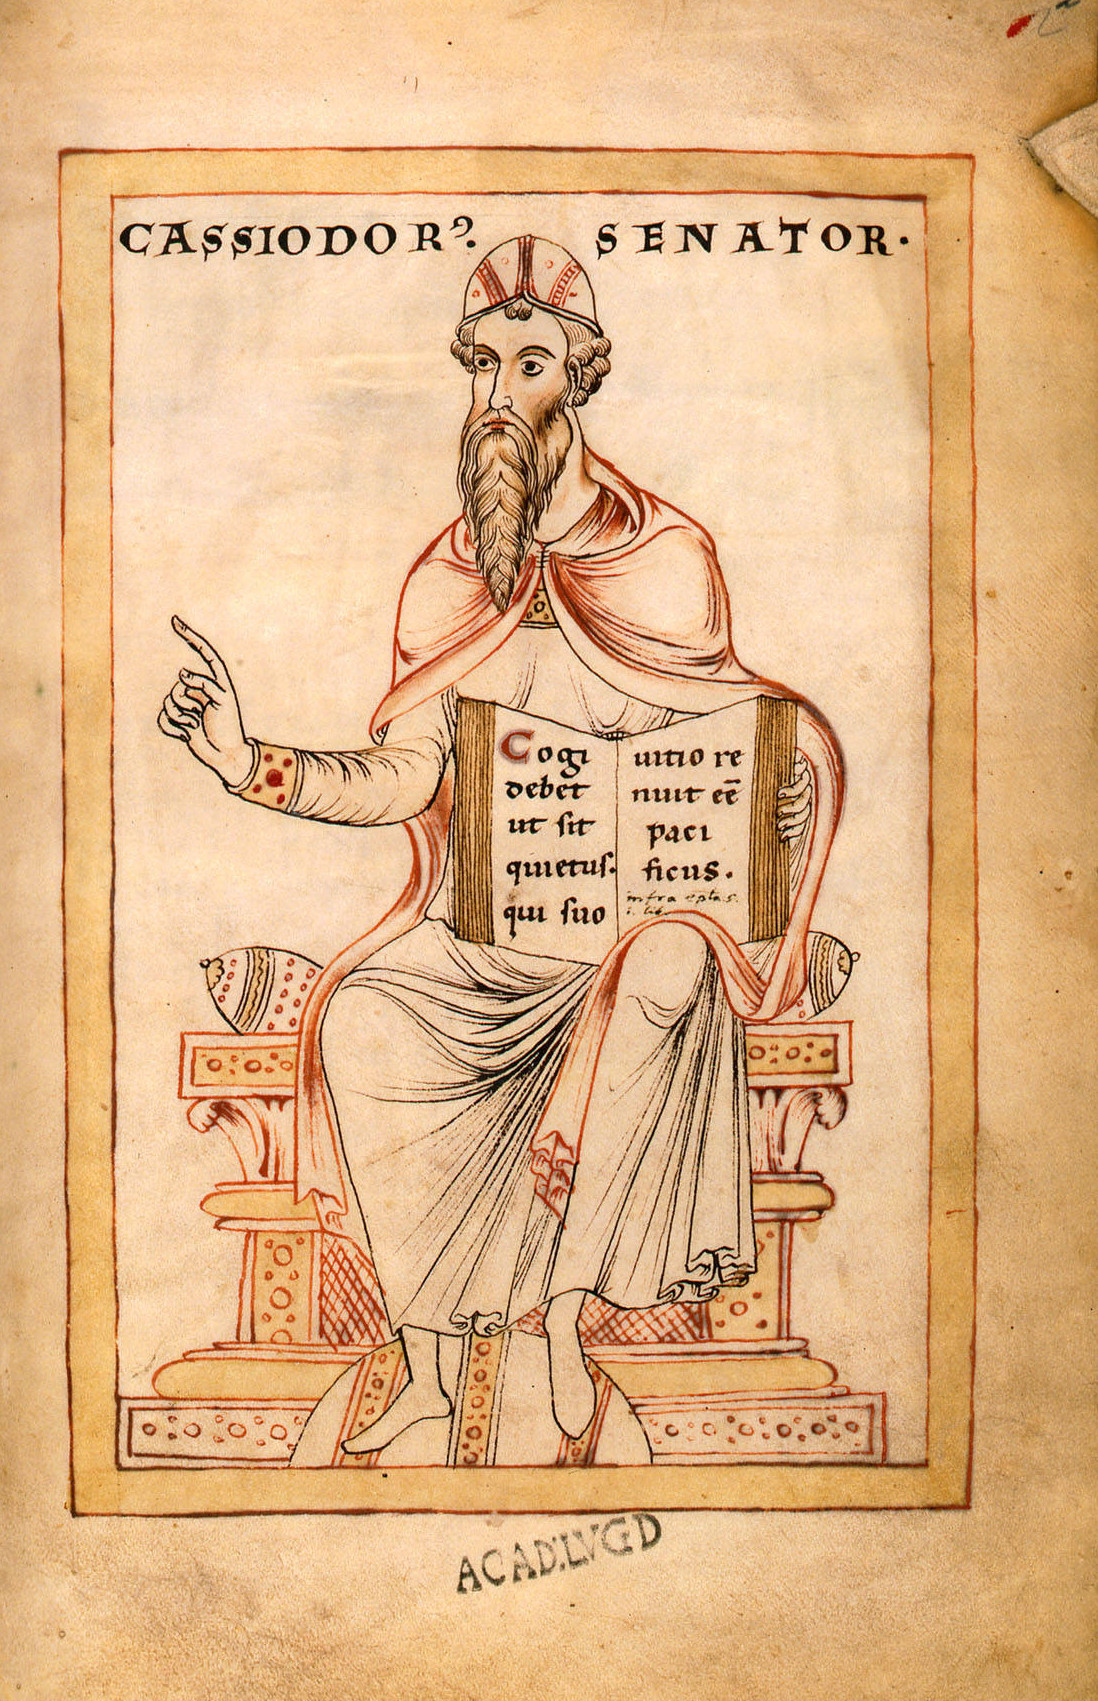 Pintura colorida do escritor e estadista romano Cassiodoro. Ele tem barba longa, usa um adereço na cabeça e está sentado com um livro em sua mão esquerda.